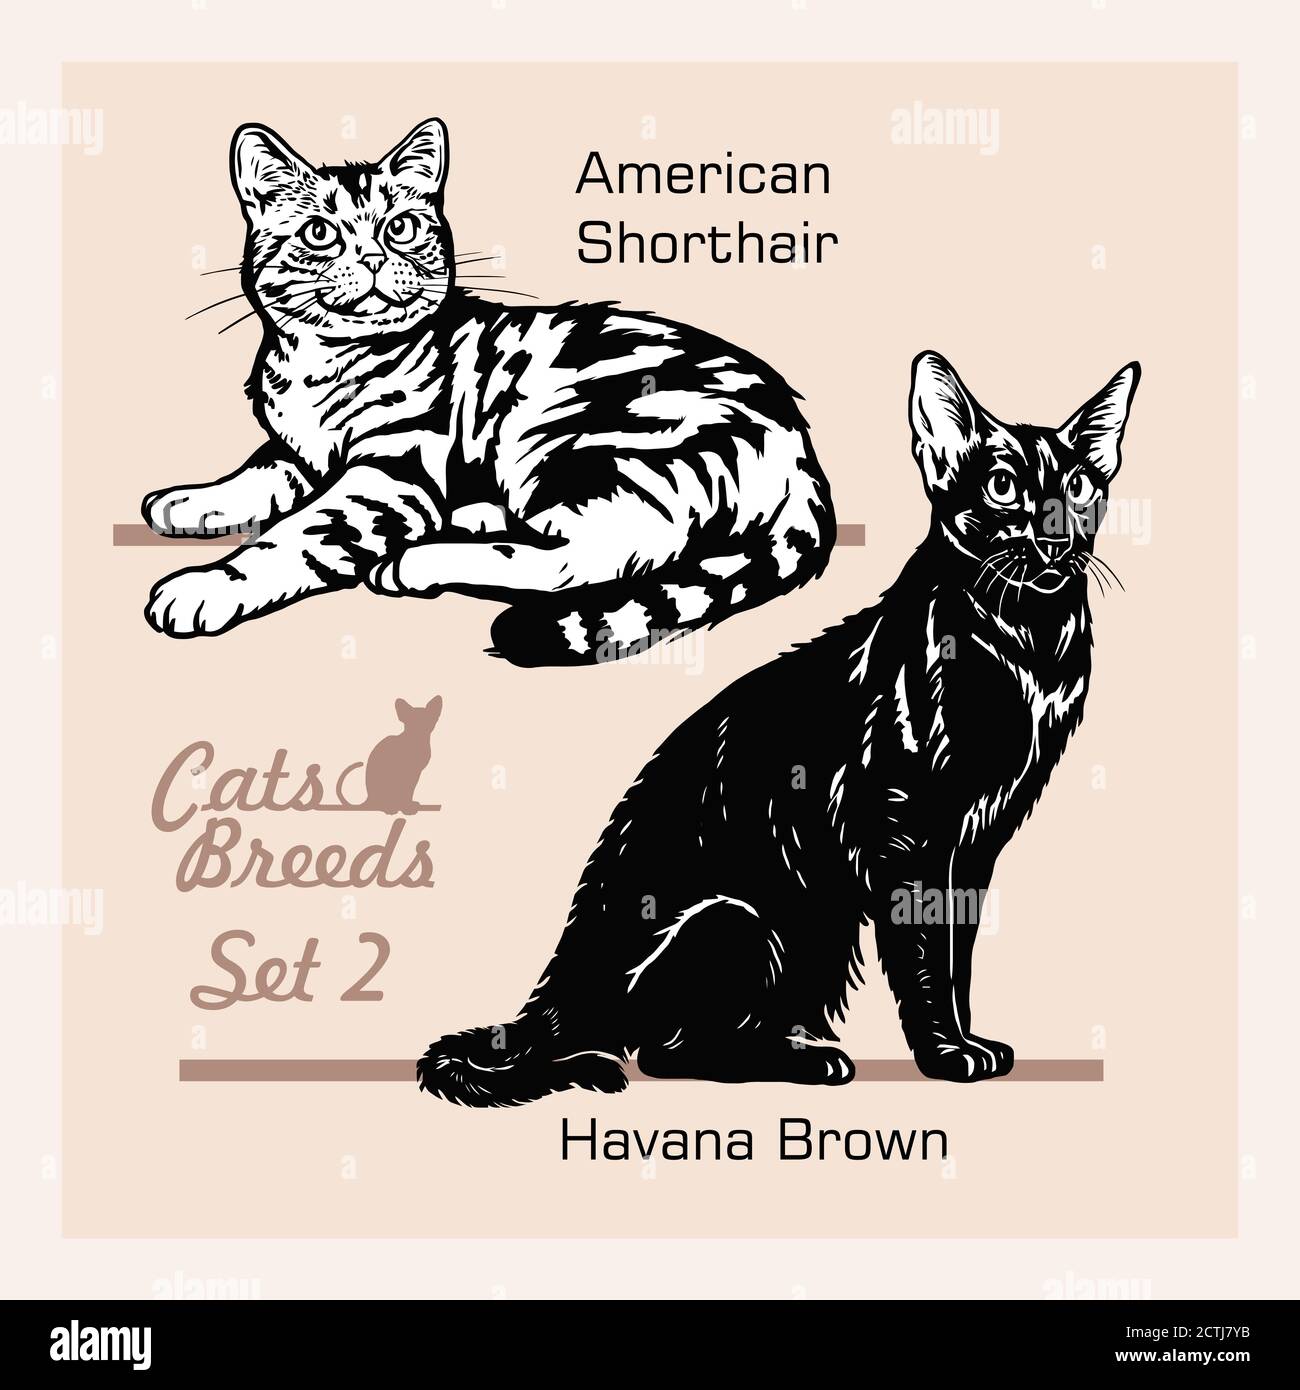 Races de chats - American Shorthair, Havana Brown - chats gais isolés sur blanc - ensemble de vecteurs Illustration de Vecteur